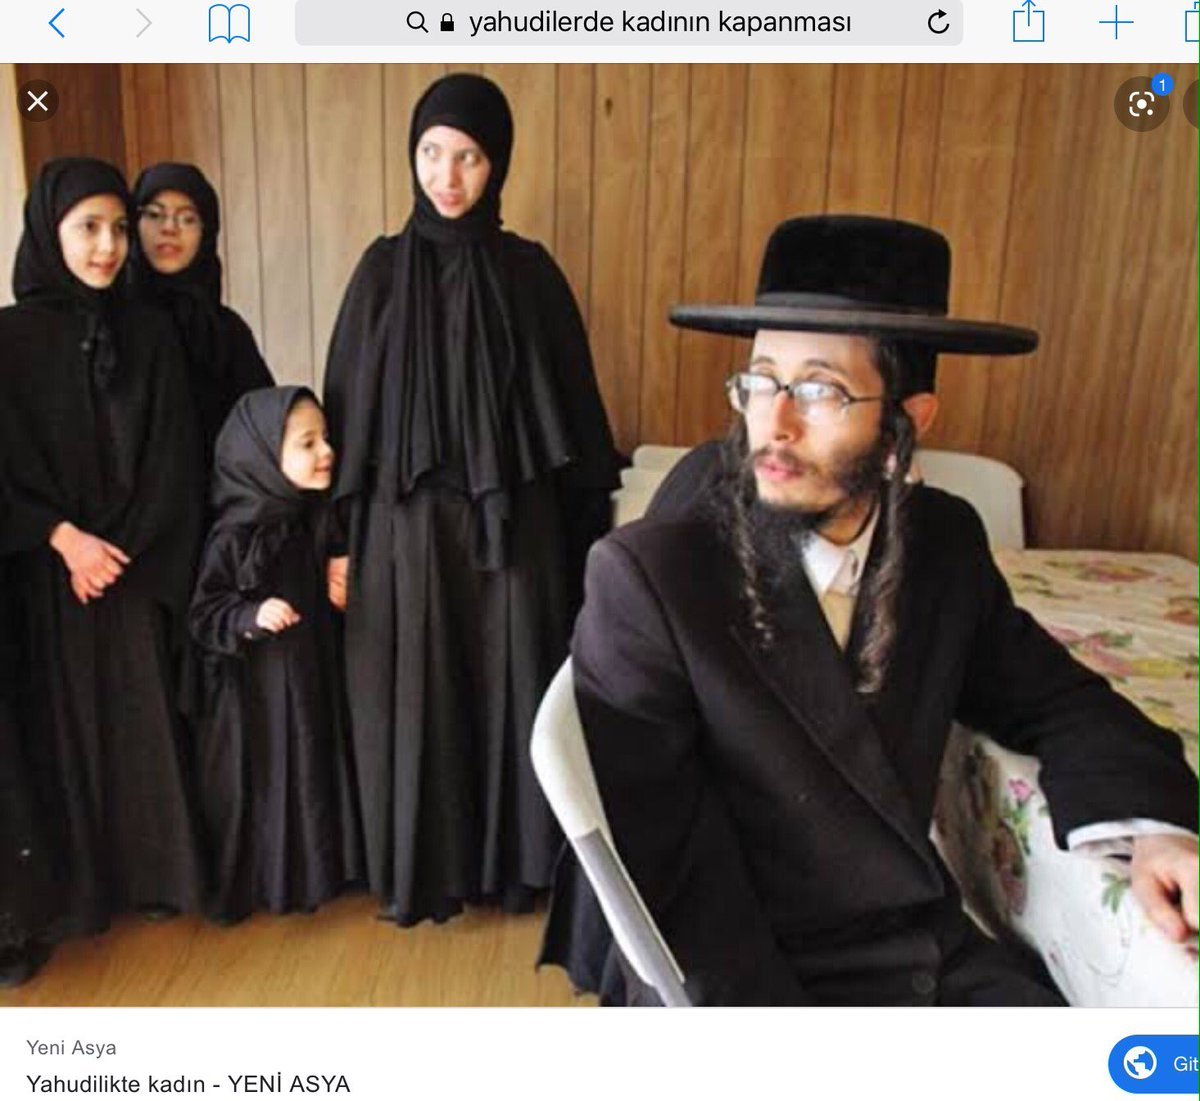 Ортодоксальный еврей кто это такие. Сатмарские хасиды женщины. Женщины хасиды Ортодоксы. Сатмарские хасиды женщины фото.